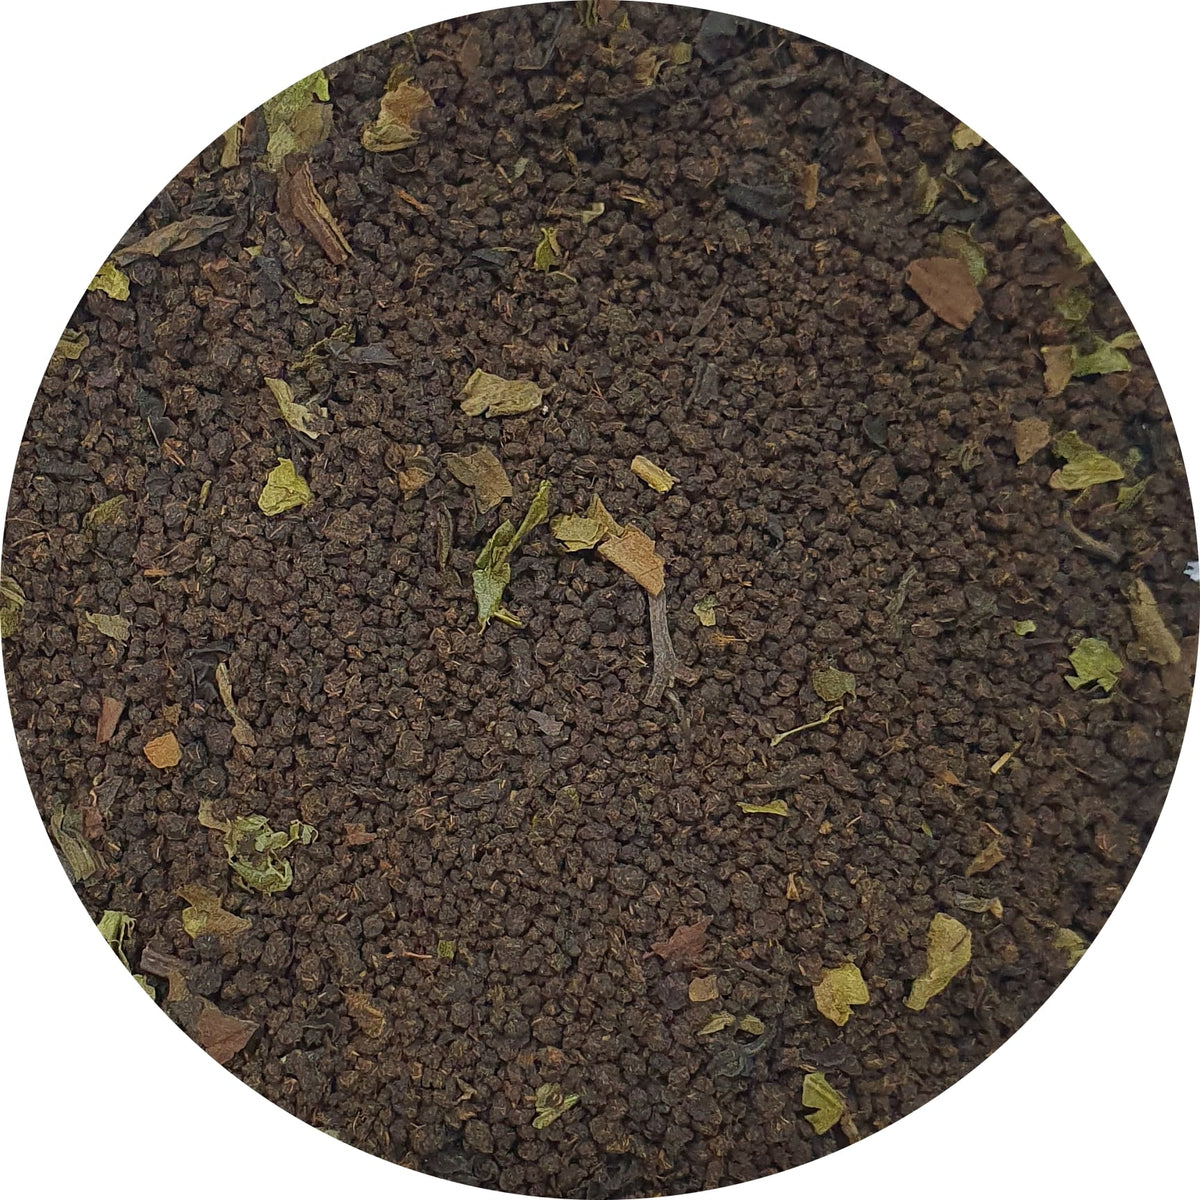 Full sample pack (Blended CTC tea)